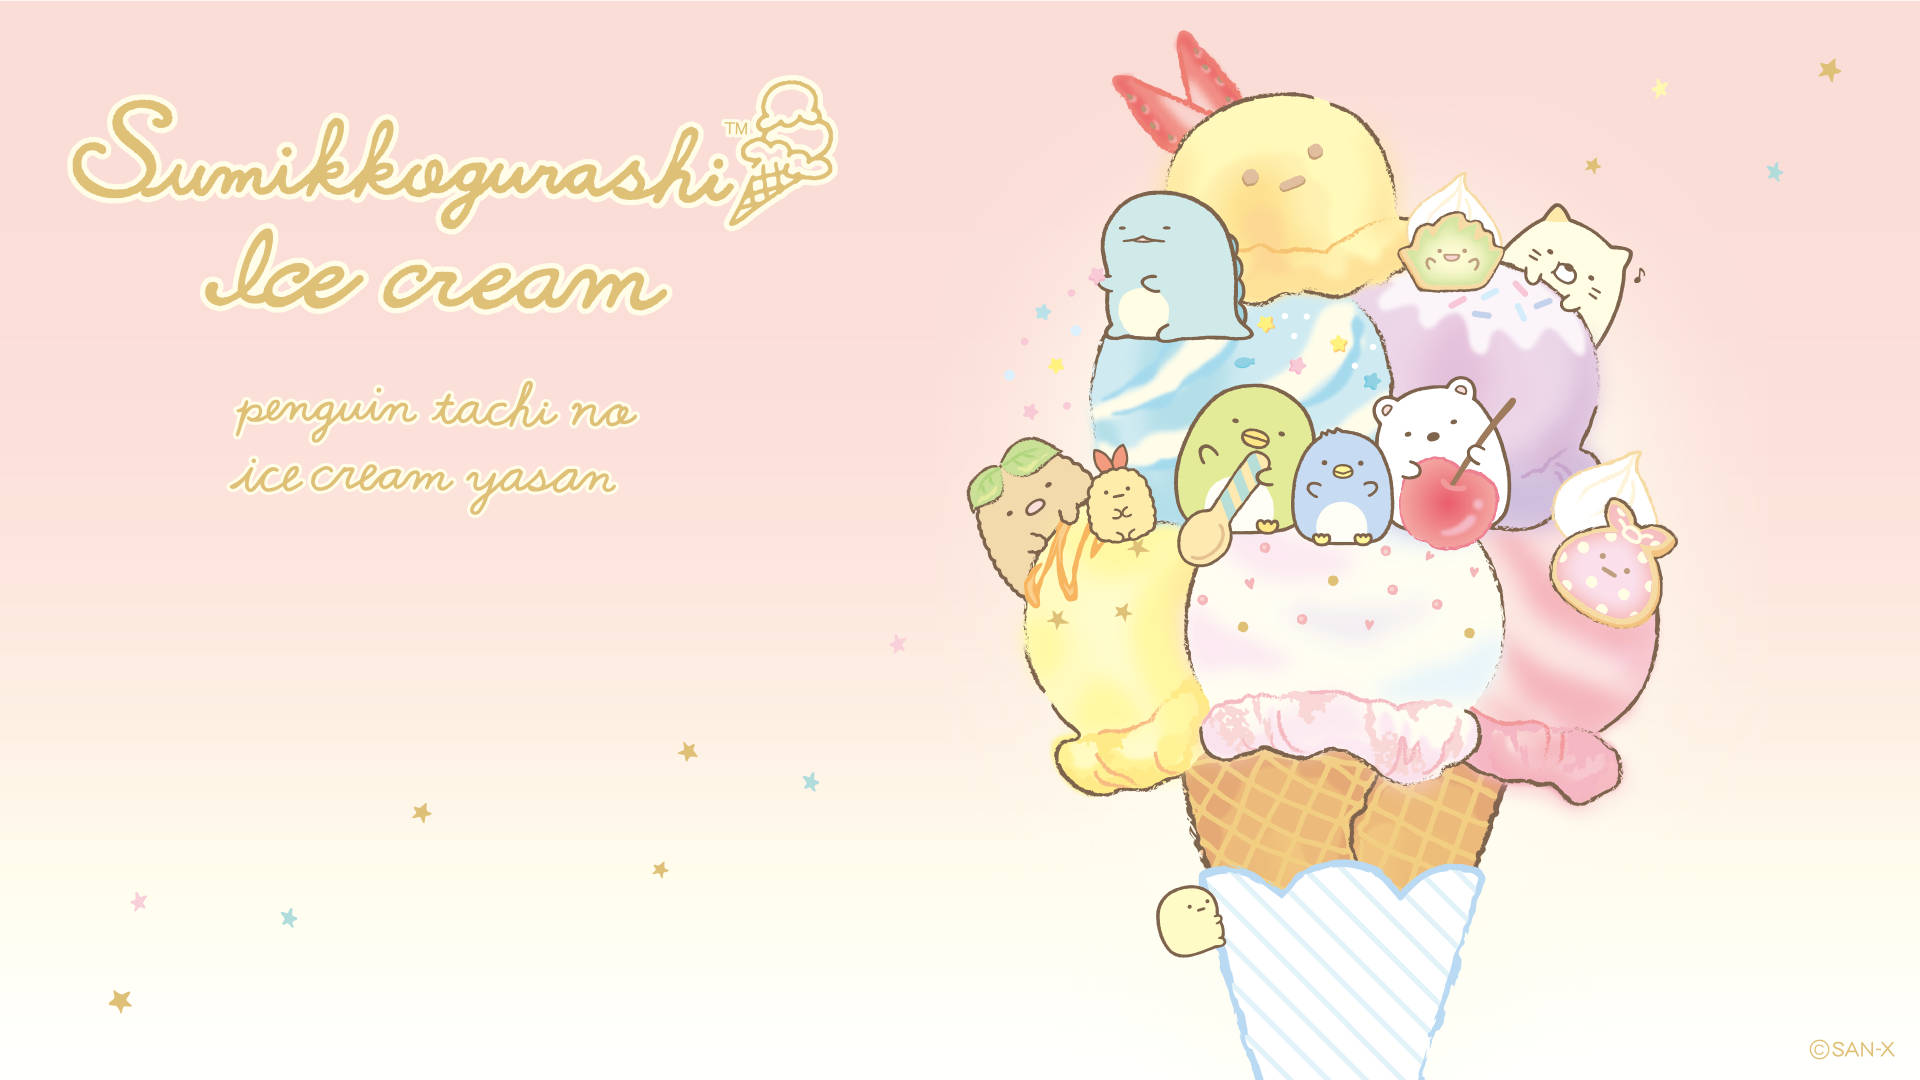 Sumikko Gurashi On Ice Cream Cone Background